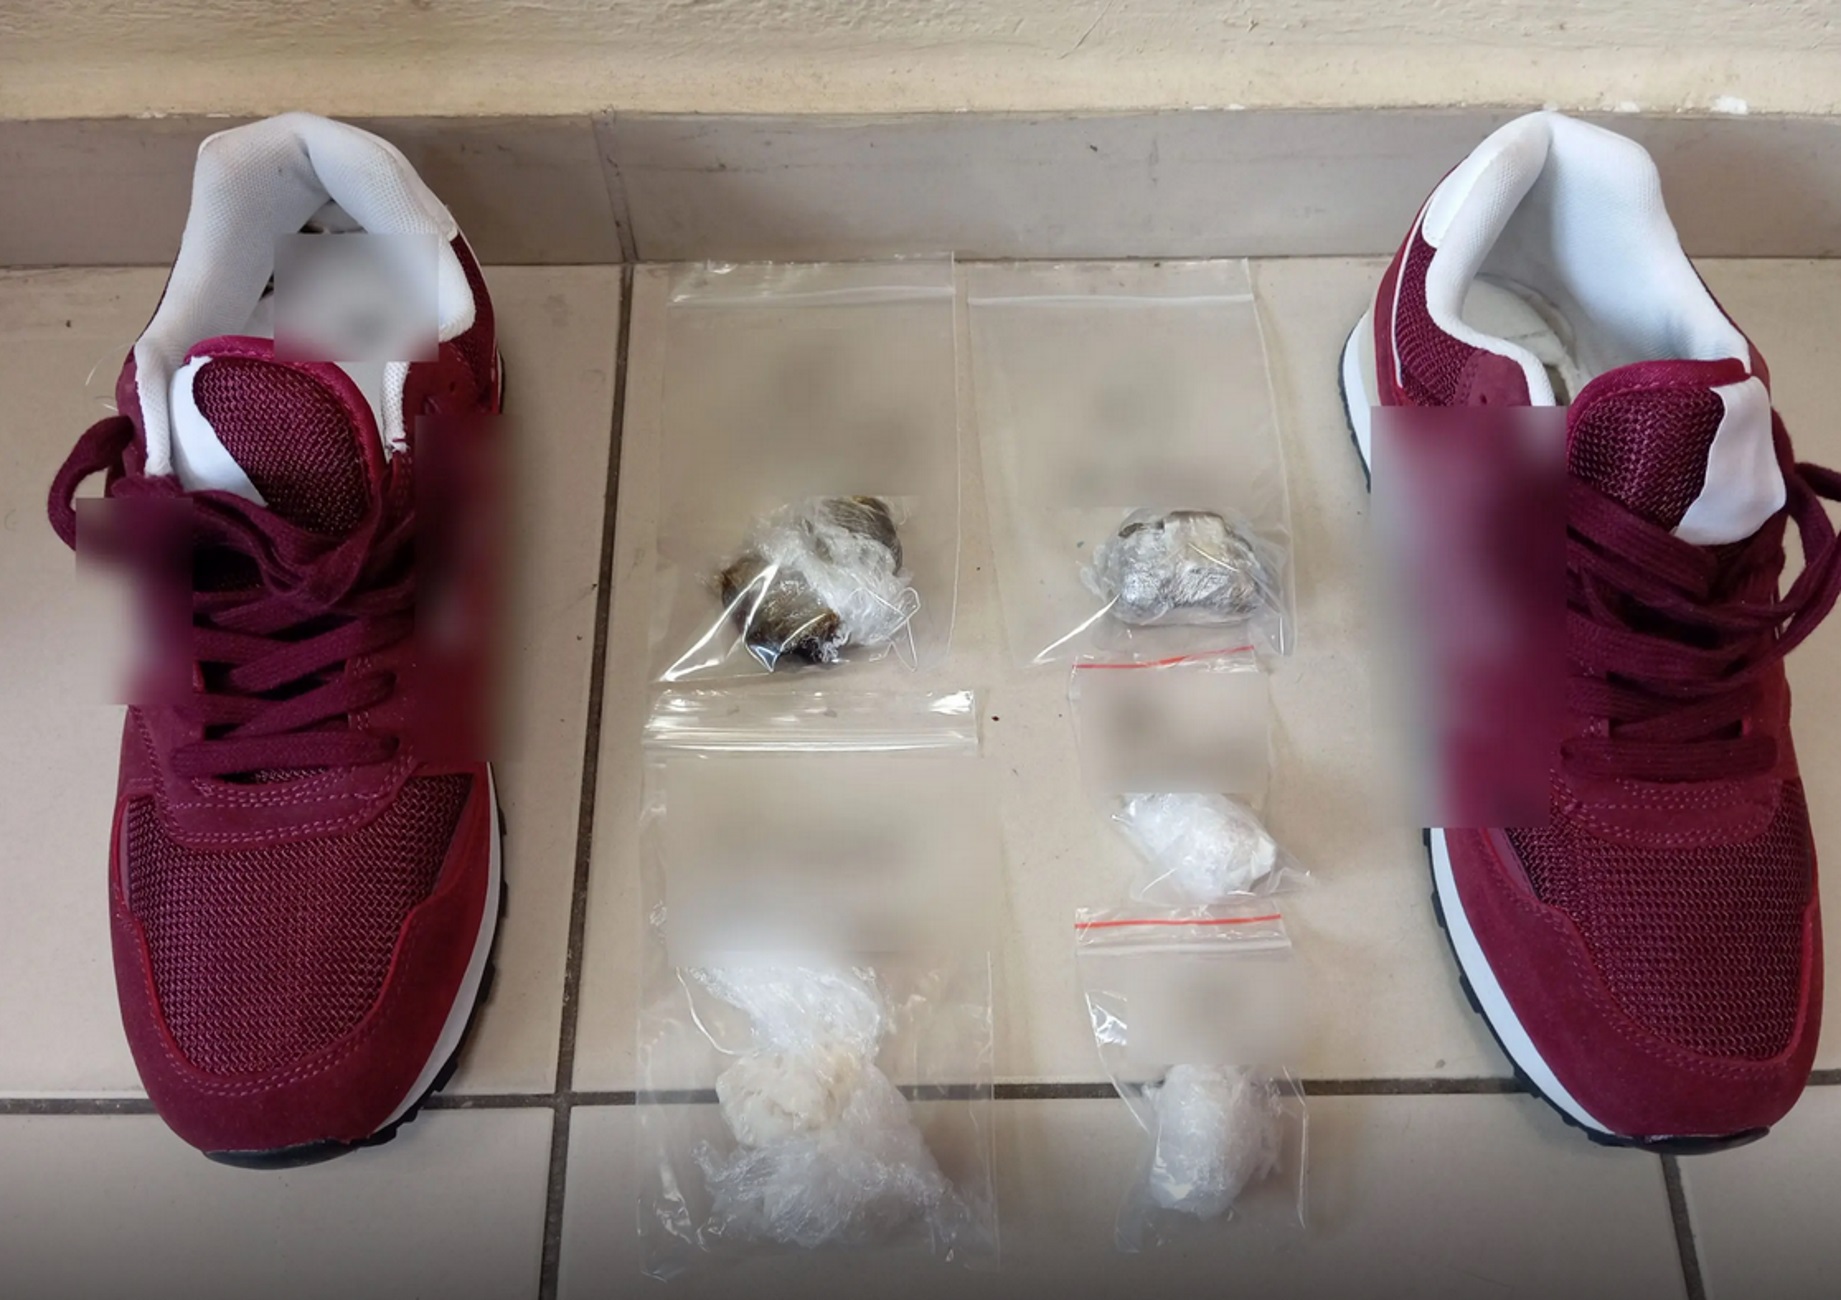 Φυλακές Τρικάλων: Δύο συλλήψεις για τα ναρκωτικά που βρέθηκαν σε αθλητικά παπούτσια